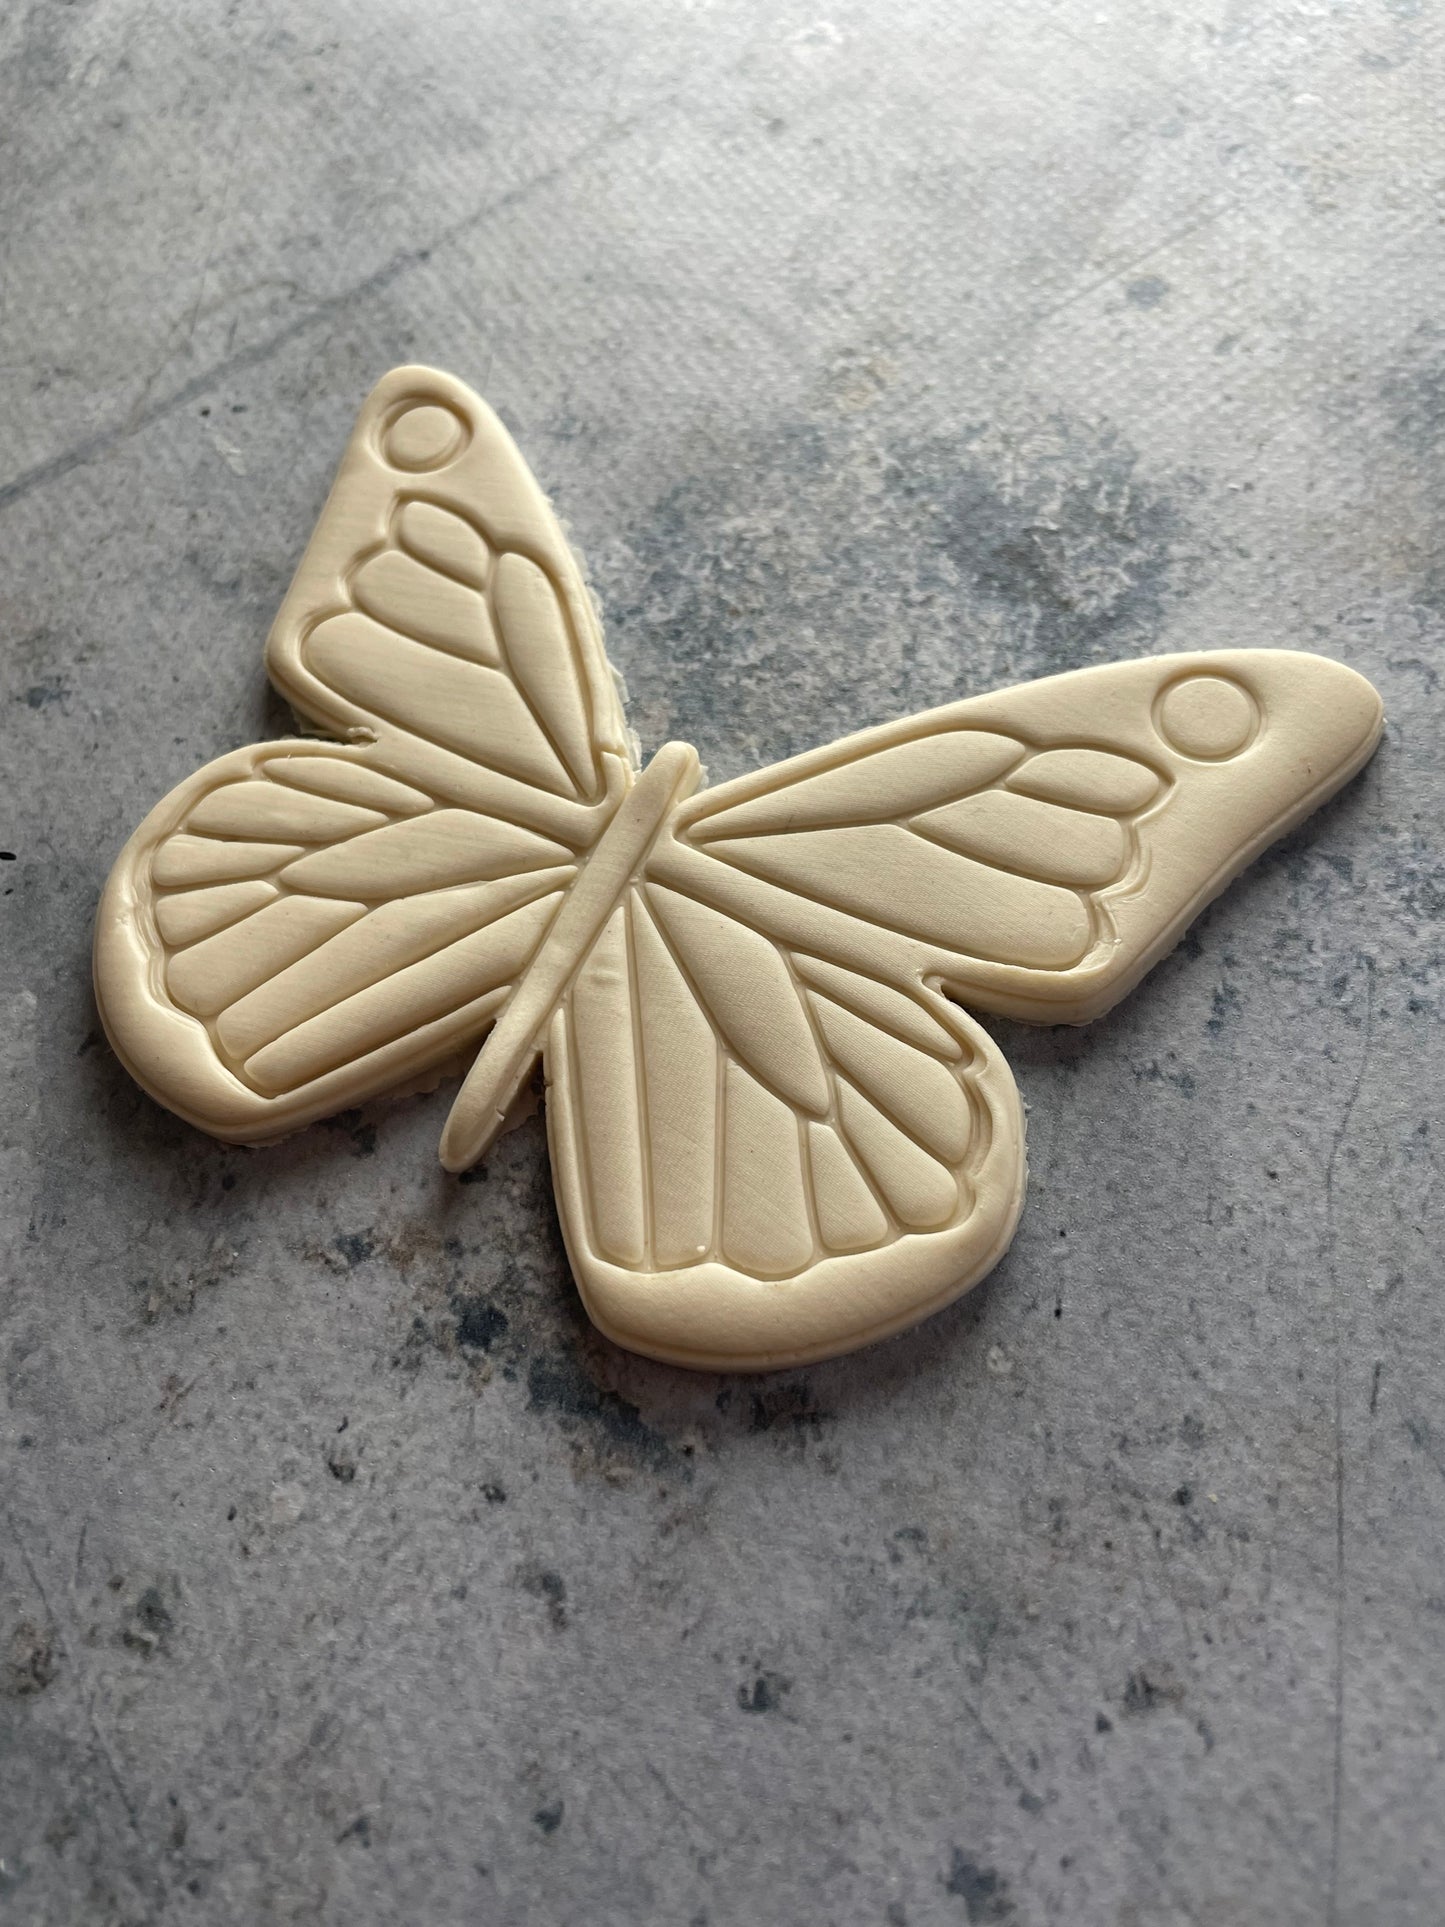 Emporte pièce Papillon - Forme - pour la réalisaton de biscuit sablé, patisserie, pate à sucre -Décoration gateau-Fait maison- ELACE